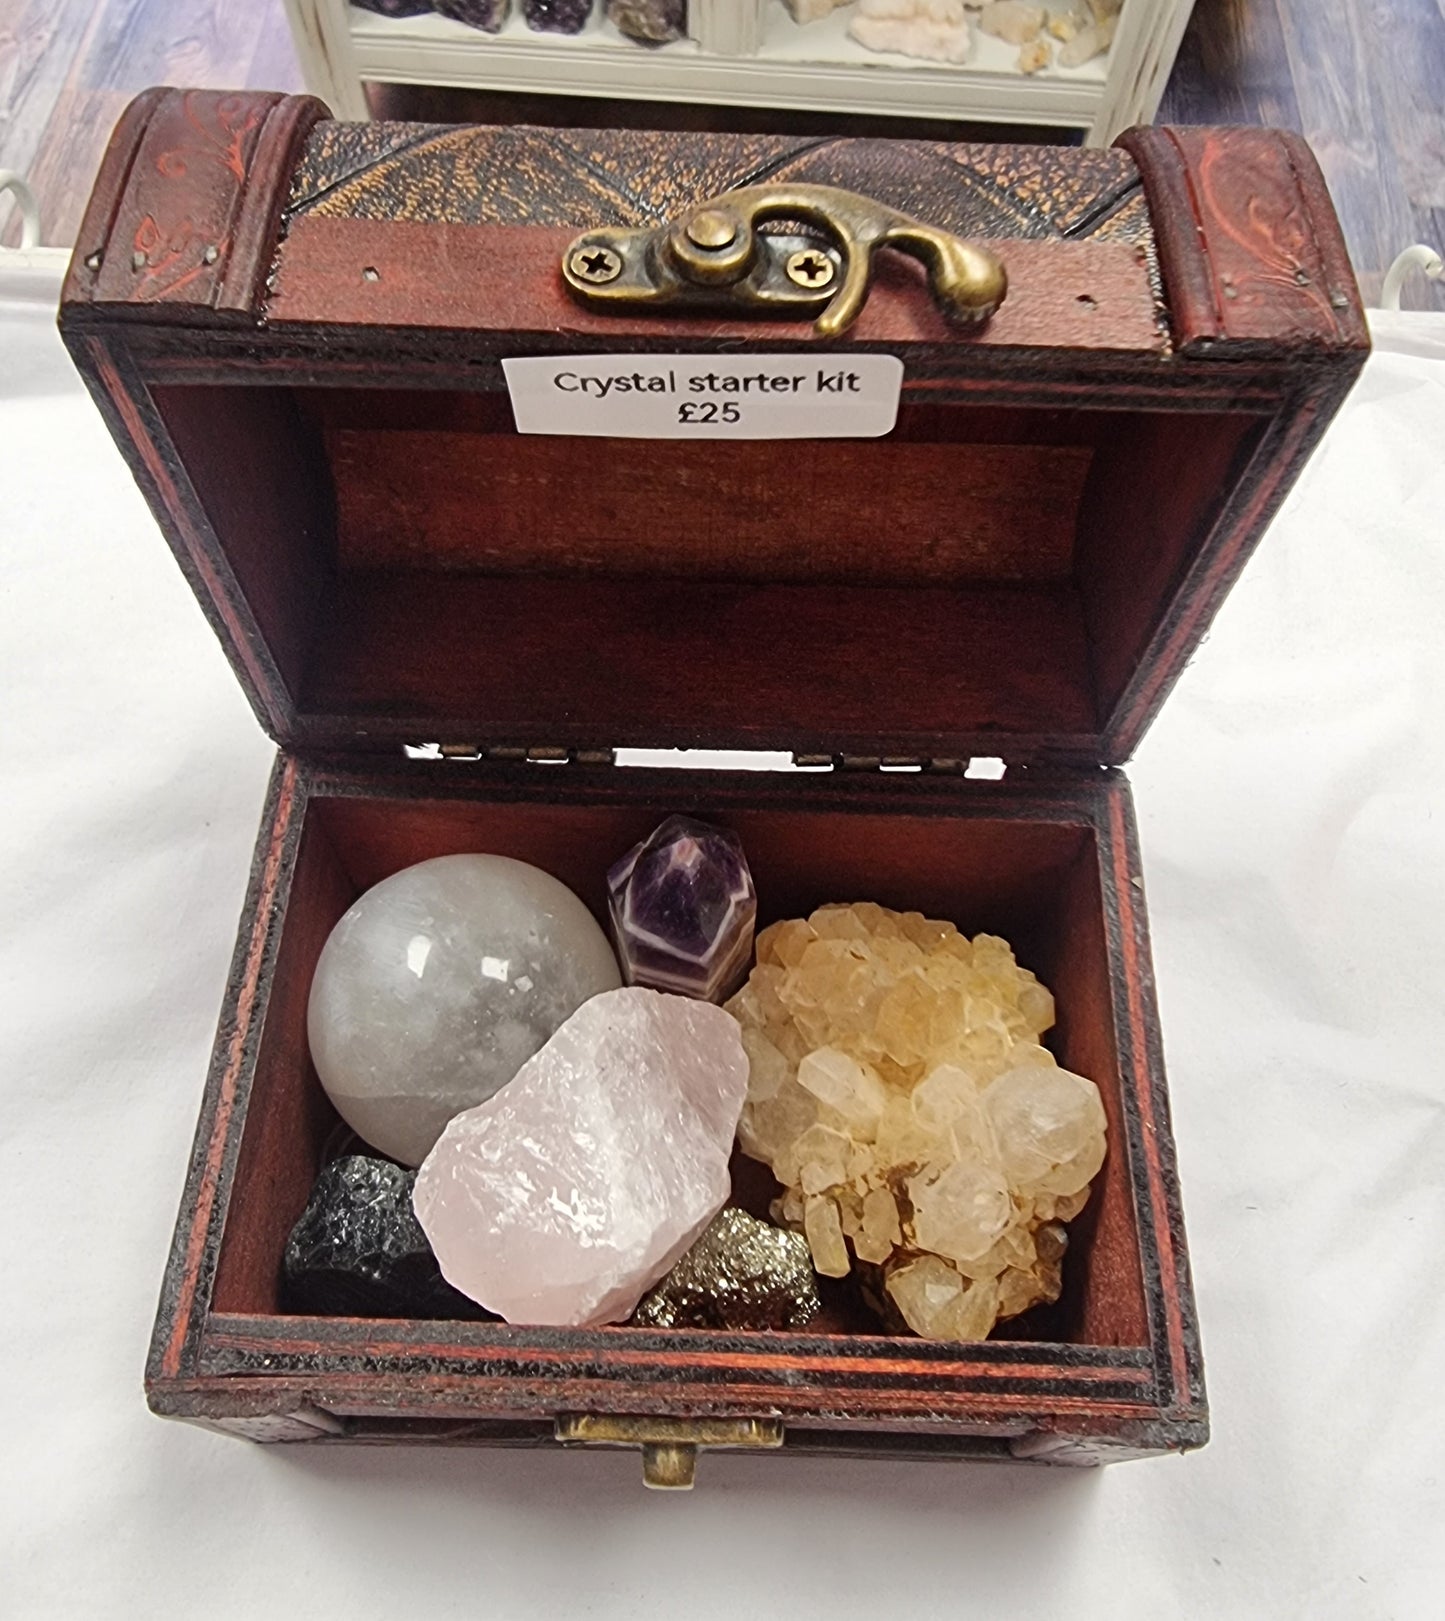 Crystal starter kit gift box